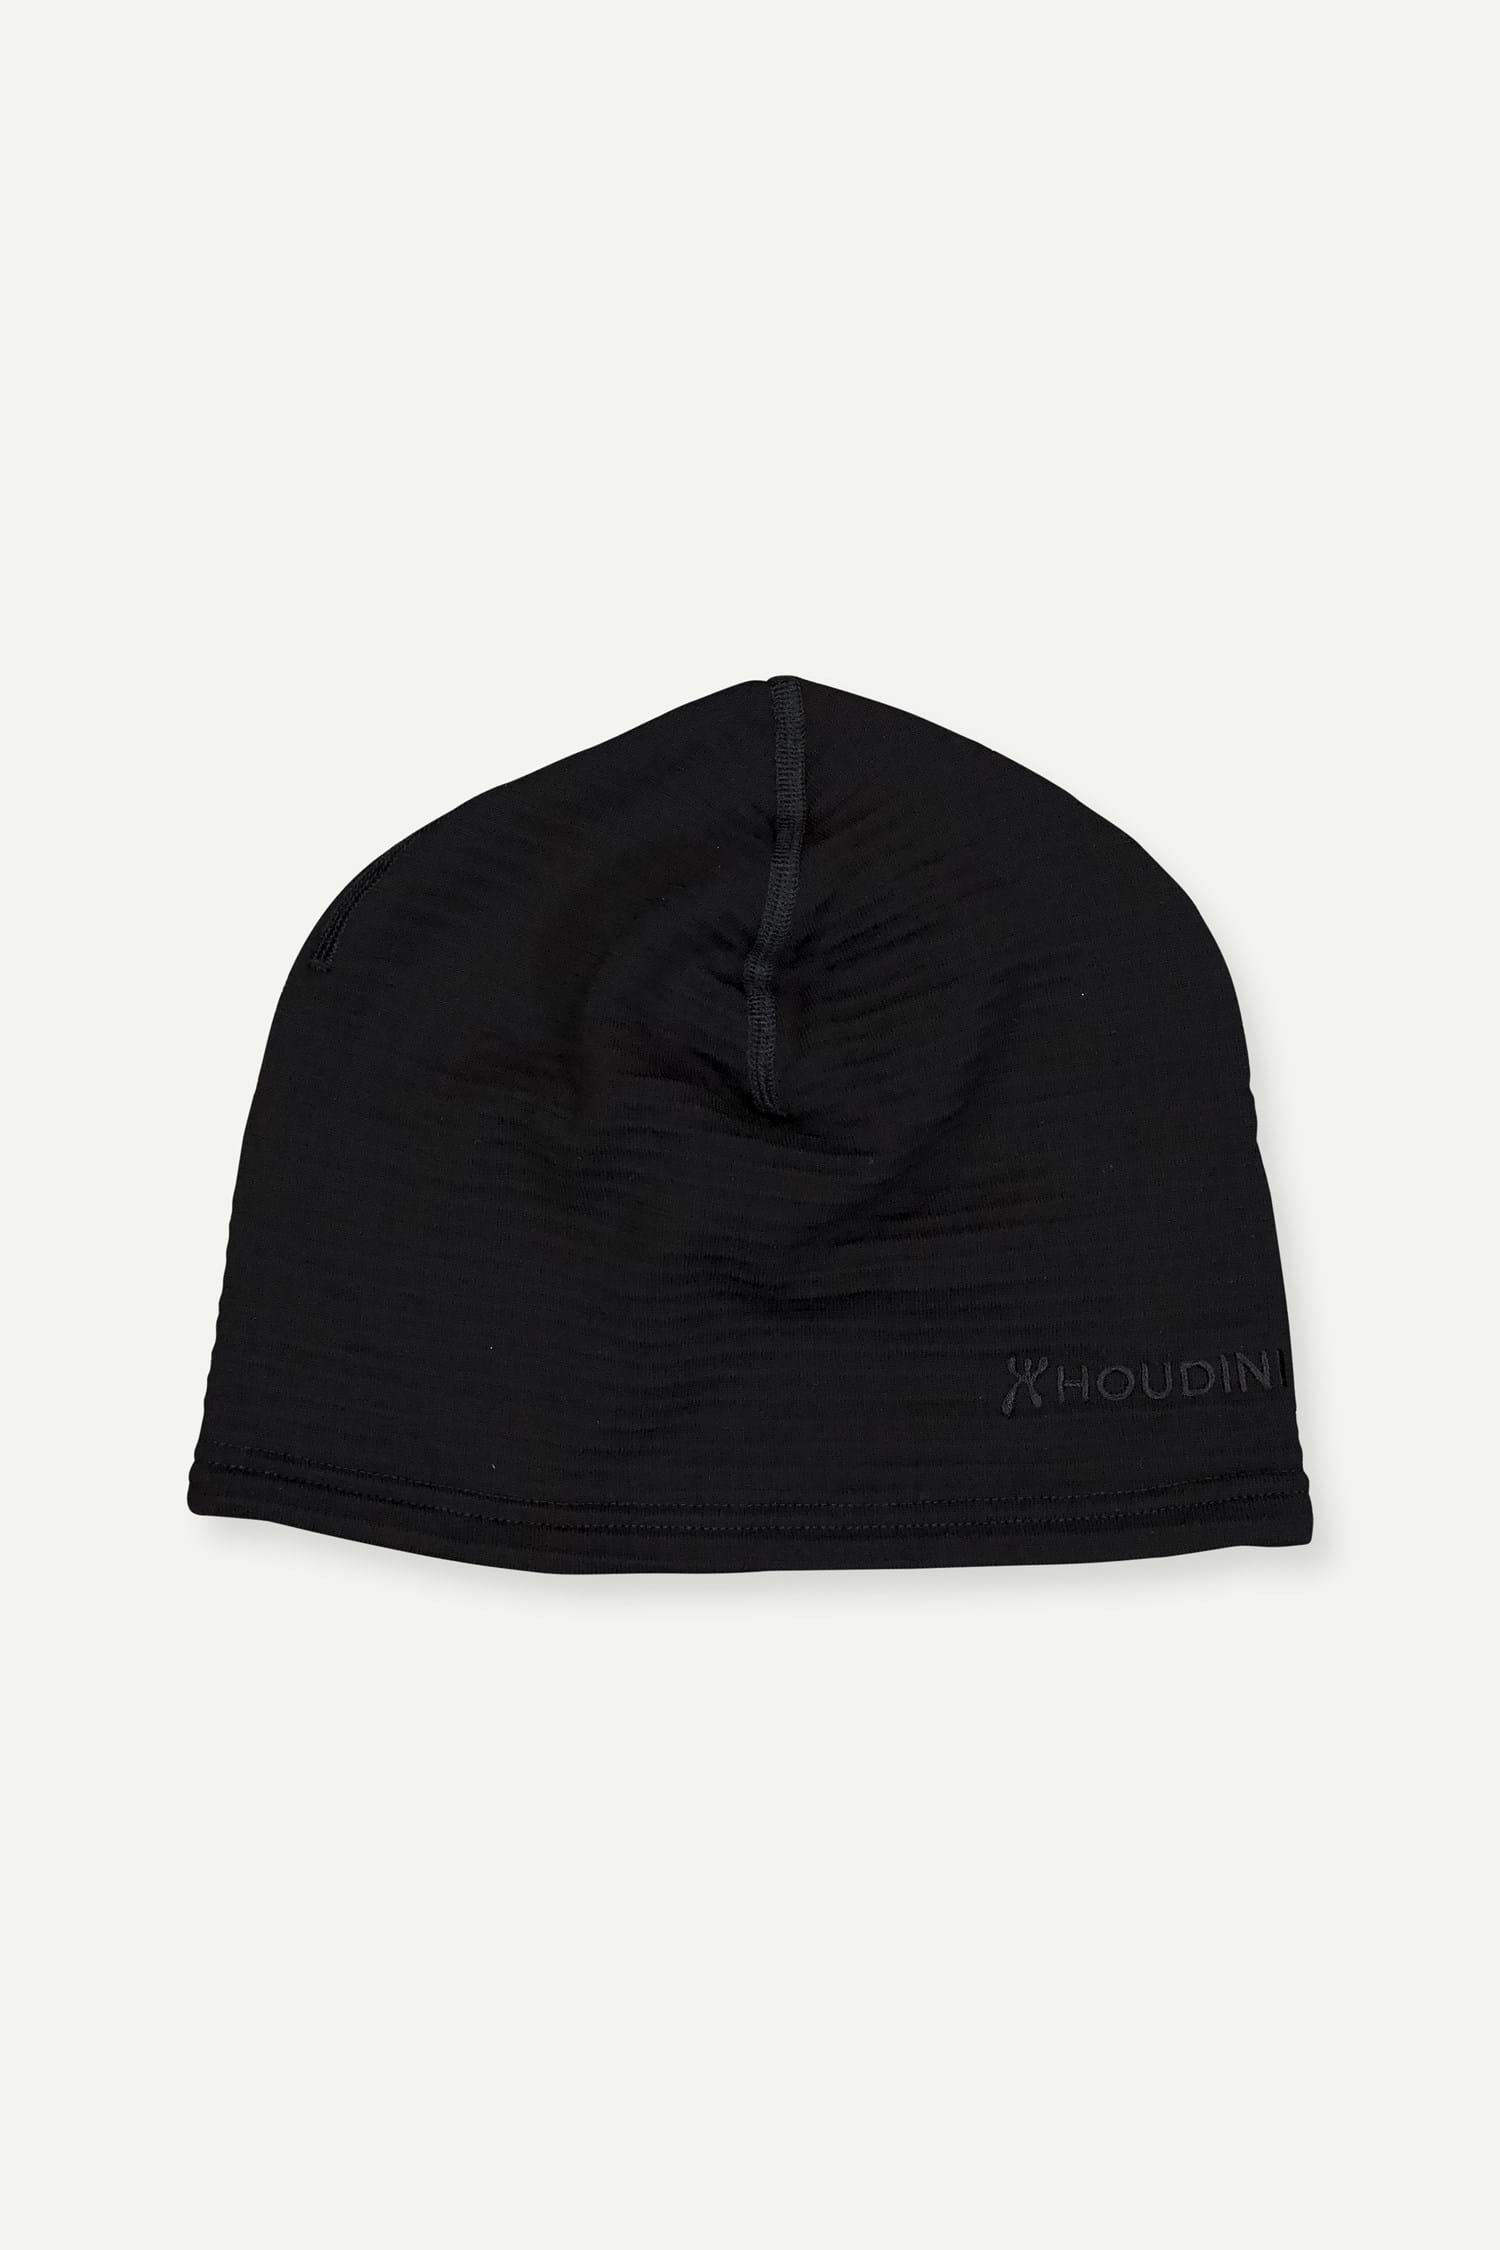 Produktfoto för Houdini Desoli Thermal Hat, True Black, S